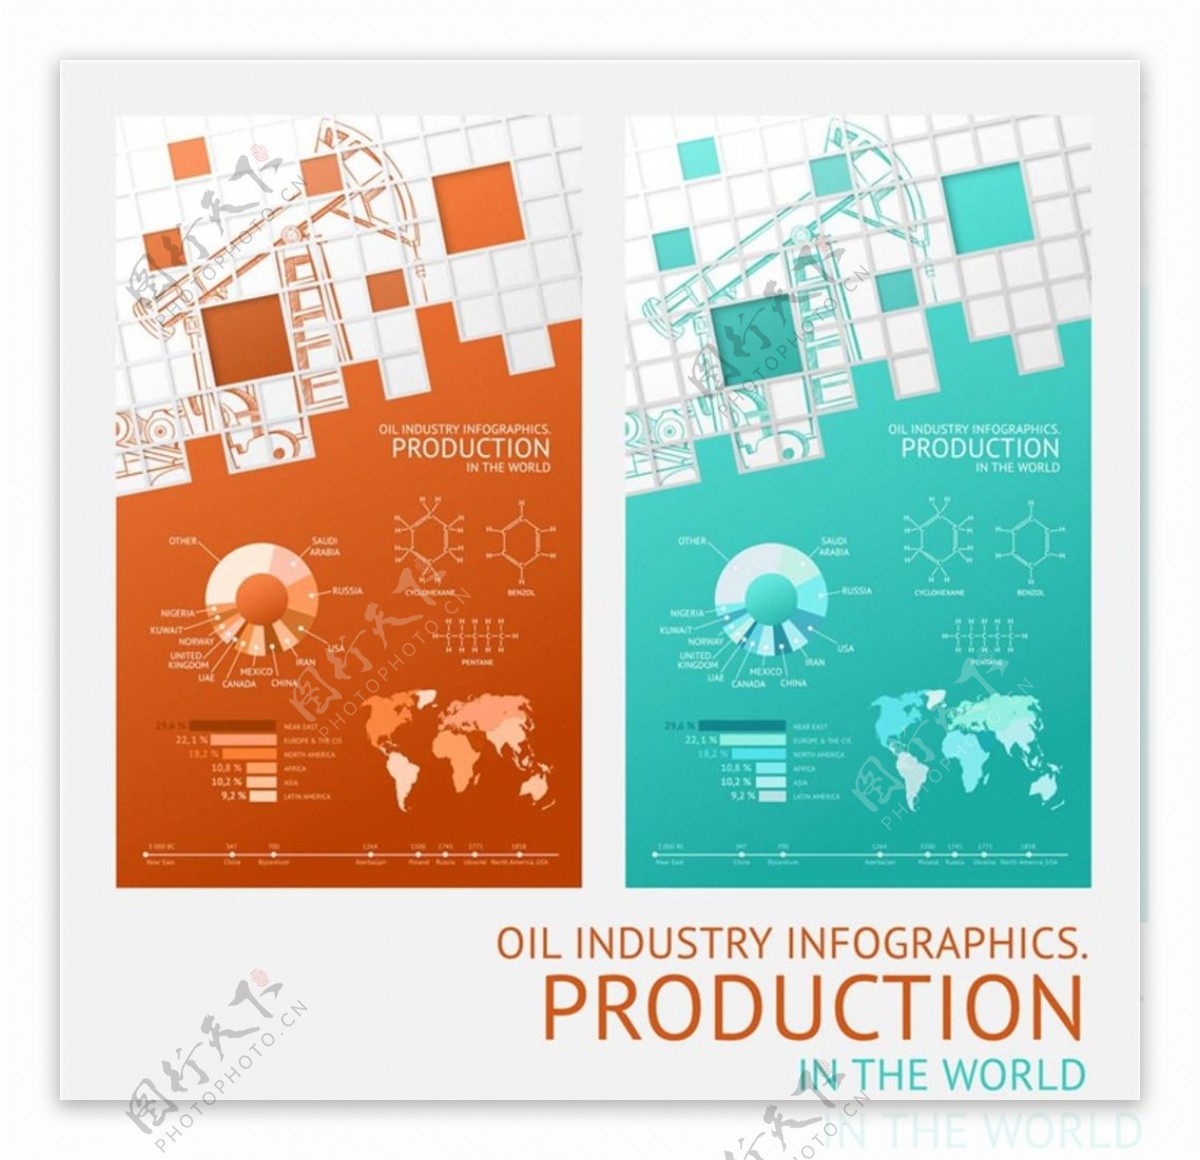 工业设计工业图标图片